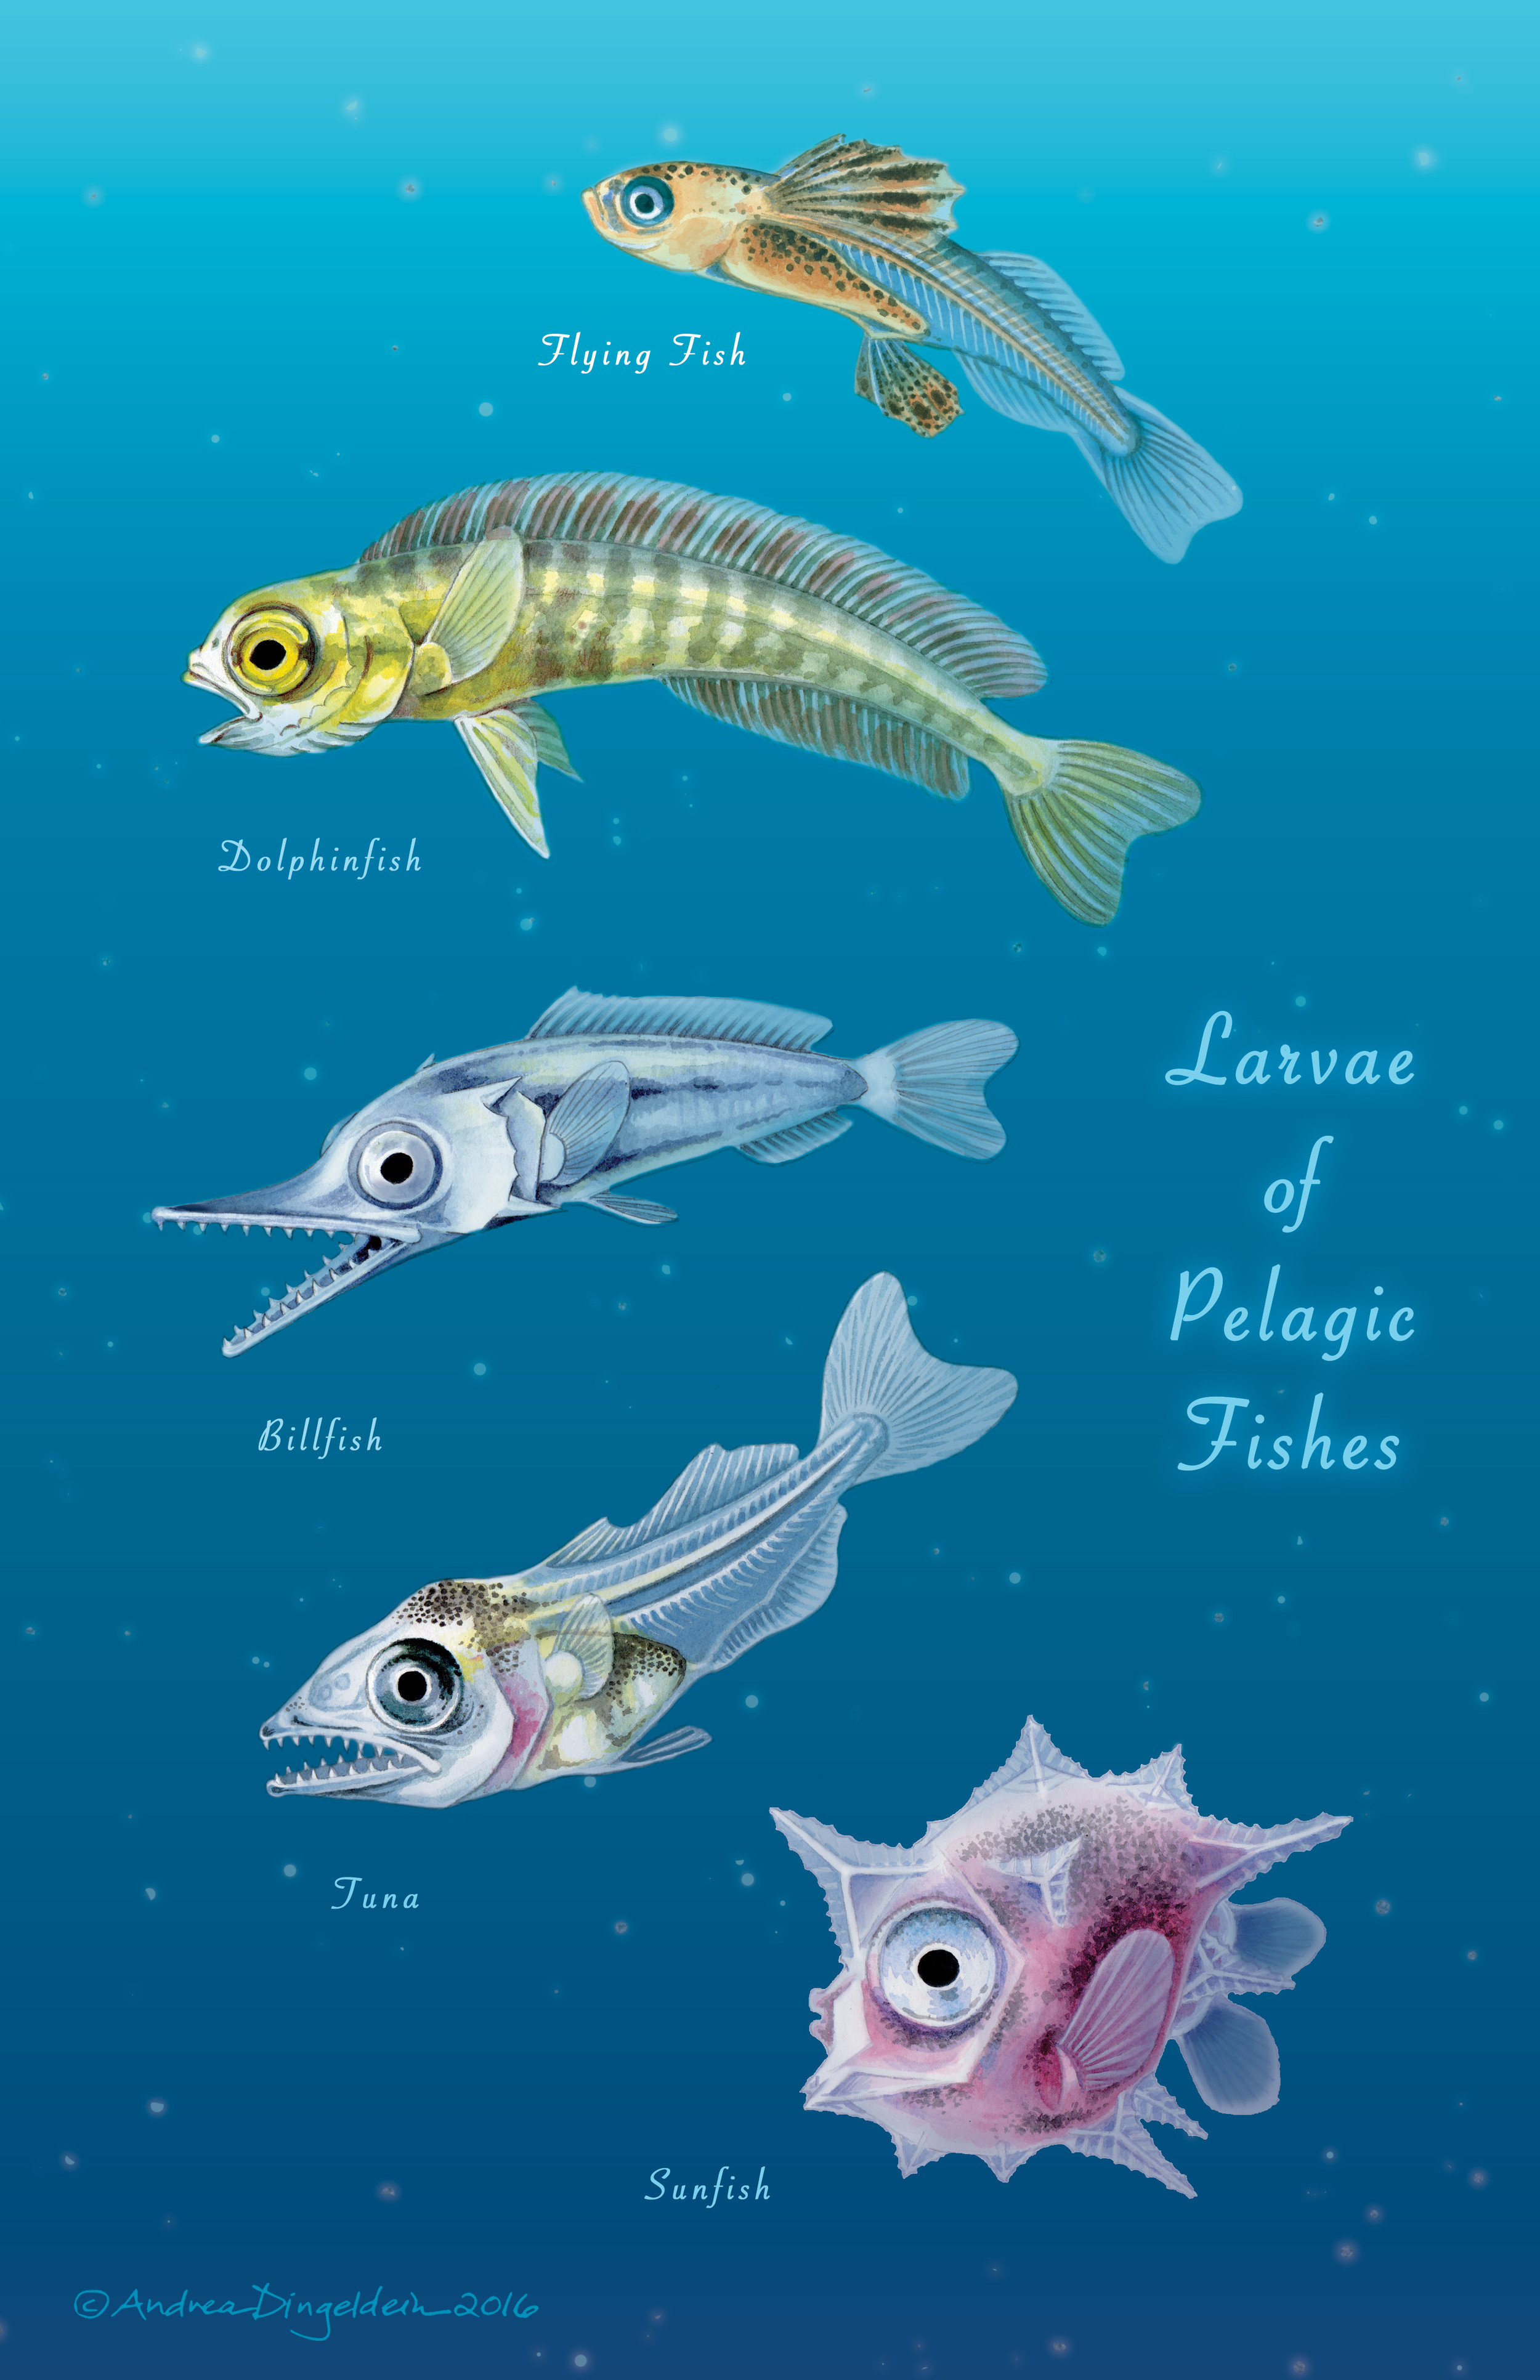 Larvae of Pelagic Fishes